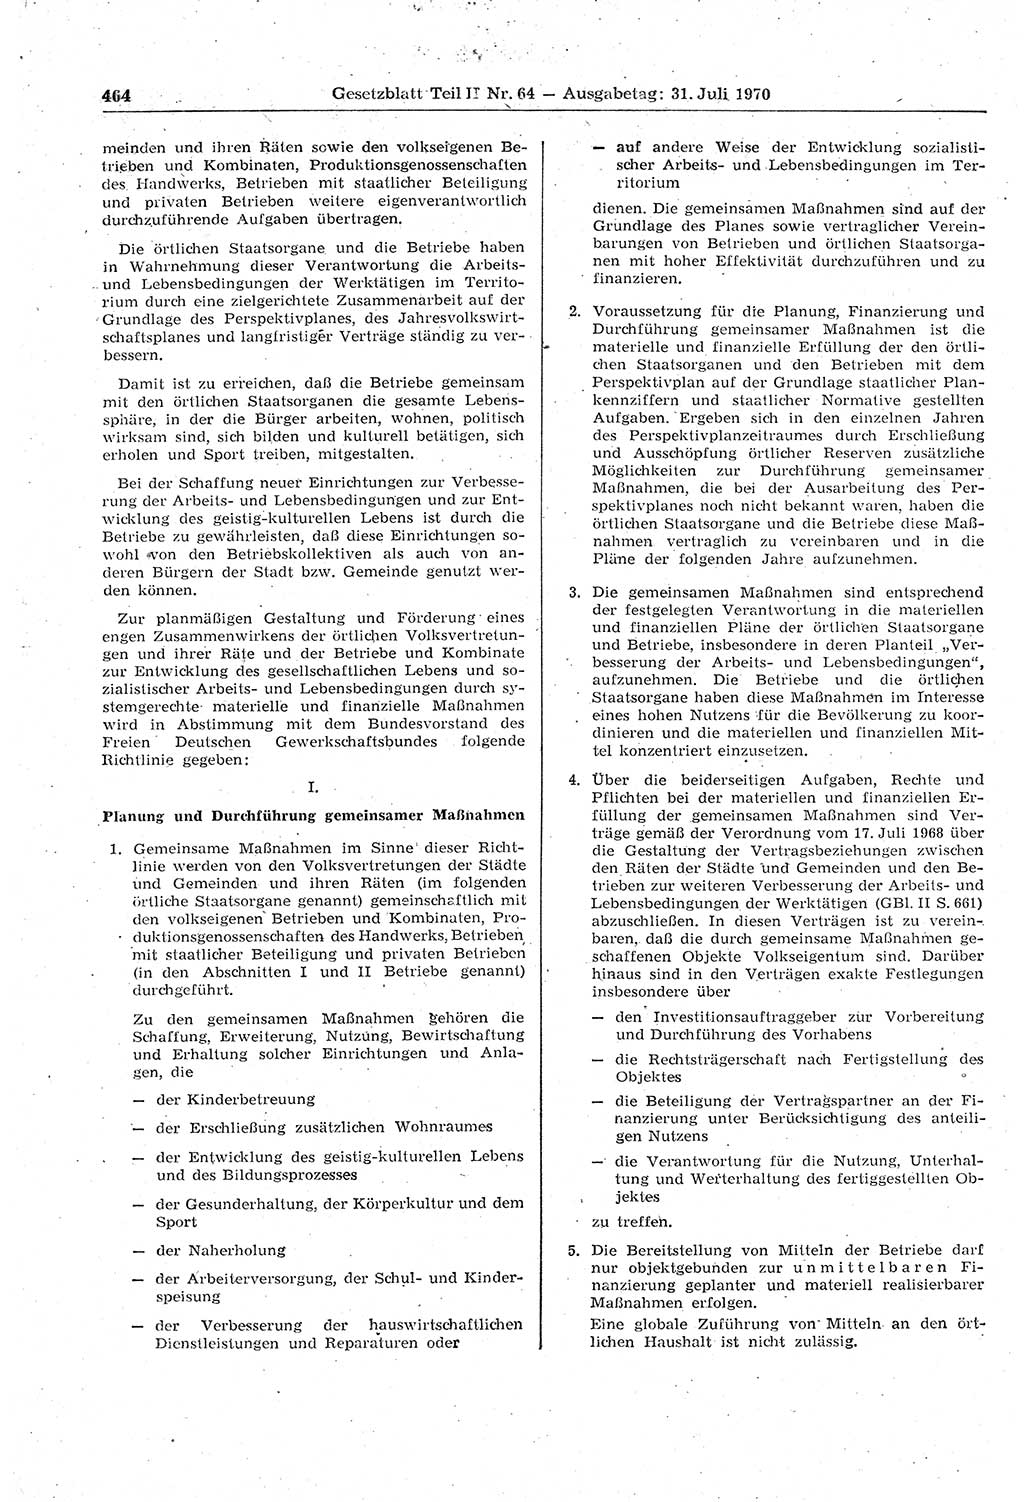 Gesetzblatt (GBl.) der Deutschen Demokratischen Republik (DDR) Teil ⅠⅠ 1970, Seite 464 (GBl. DDR ⅠⅠ 1970, S. 464)